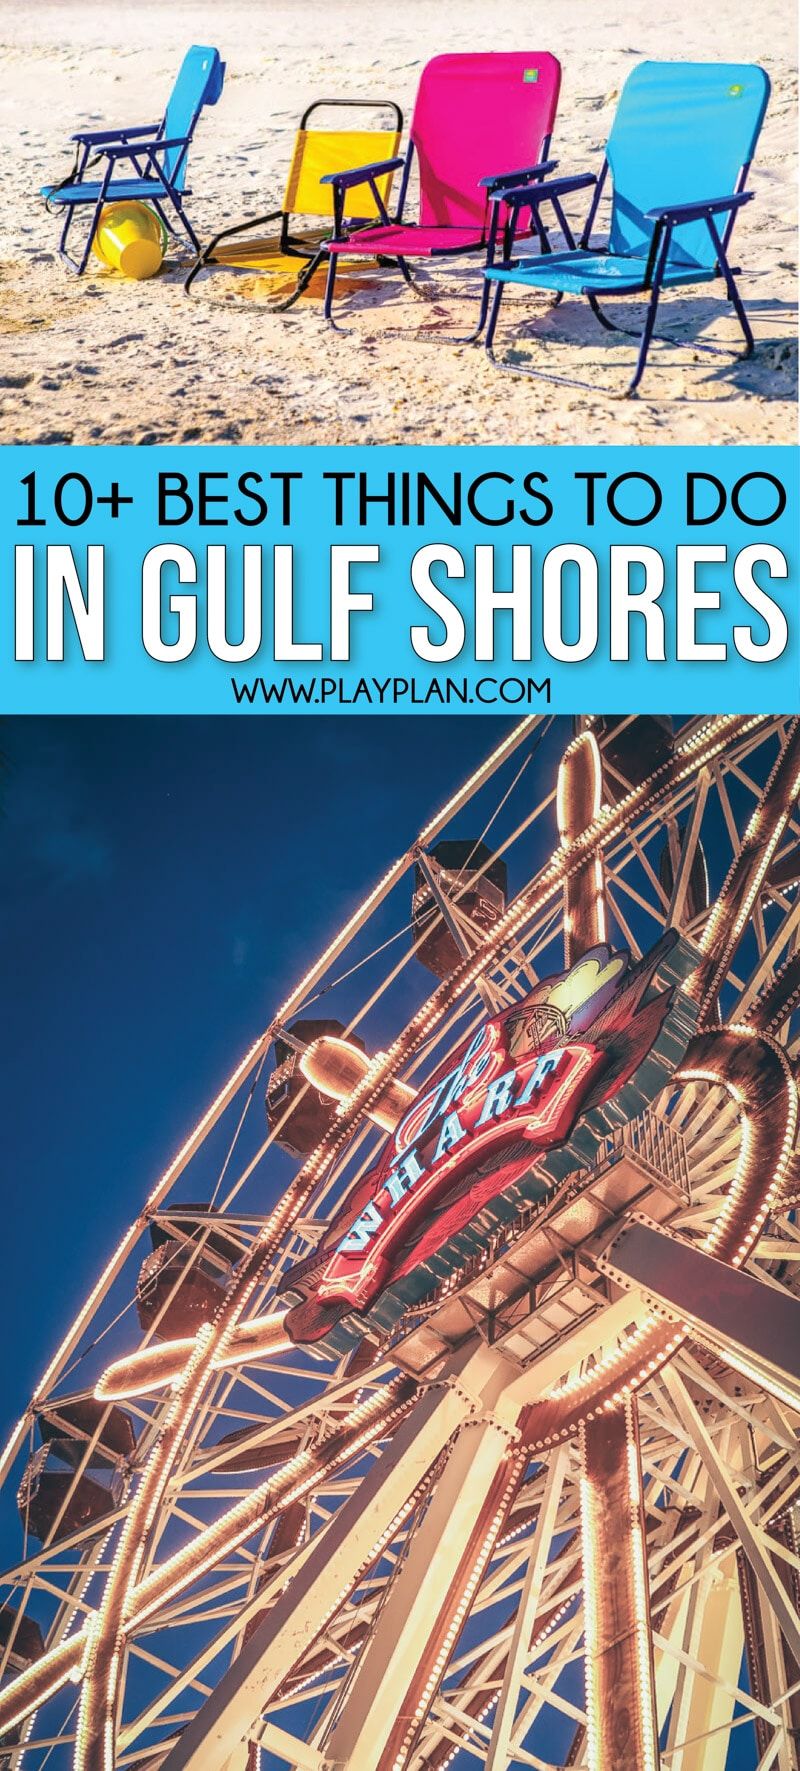 As melhores coisas para fazer em Gulf Shores Alabama não apenas a praia! Toneladas de ótimas ideias para crianças, dicas de onde se hospedar na região, ótimos aluguéis, melhores restaurantes, principais atrações e muito mais!